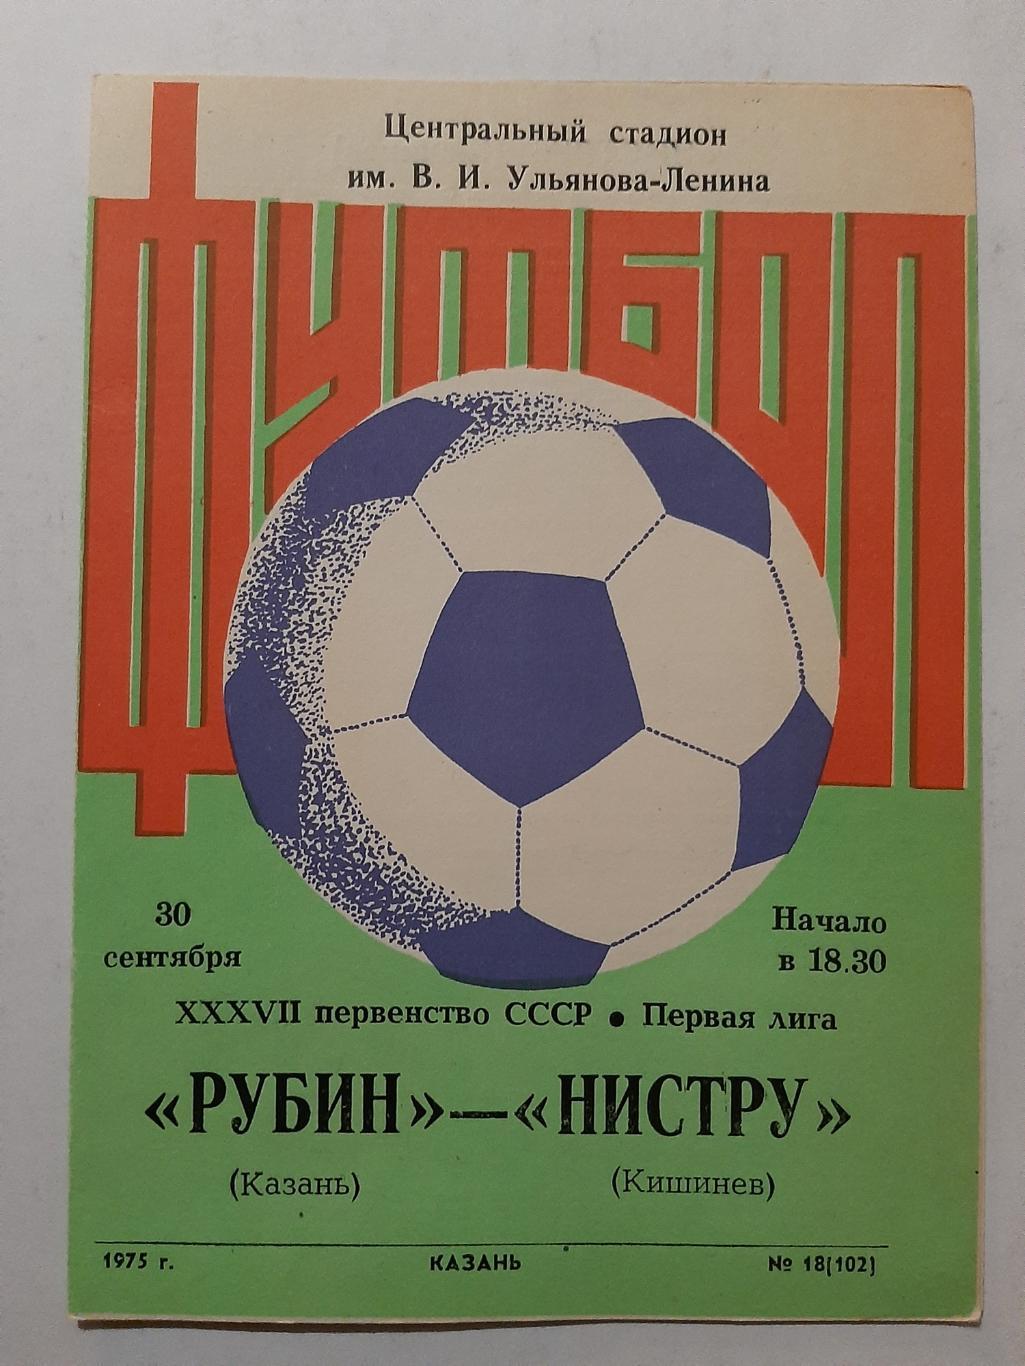 Рубин Казань - Нистру Кишинев 30.09.1975